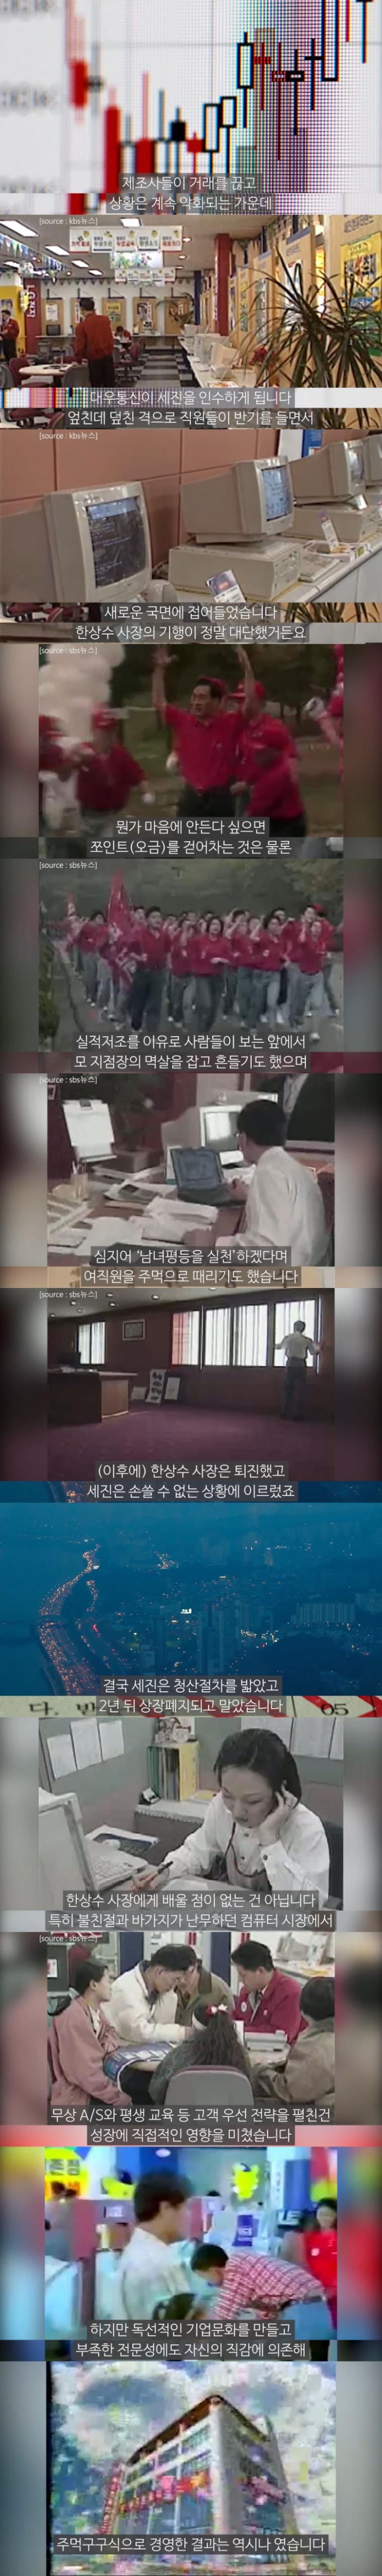 90년대 대한민국 컴퓨터업계를 쥐락펴락했던 세진컴퓨터 사장 근황